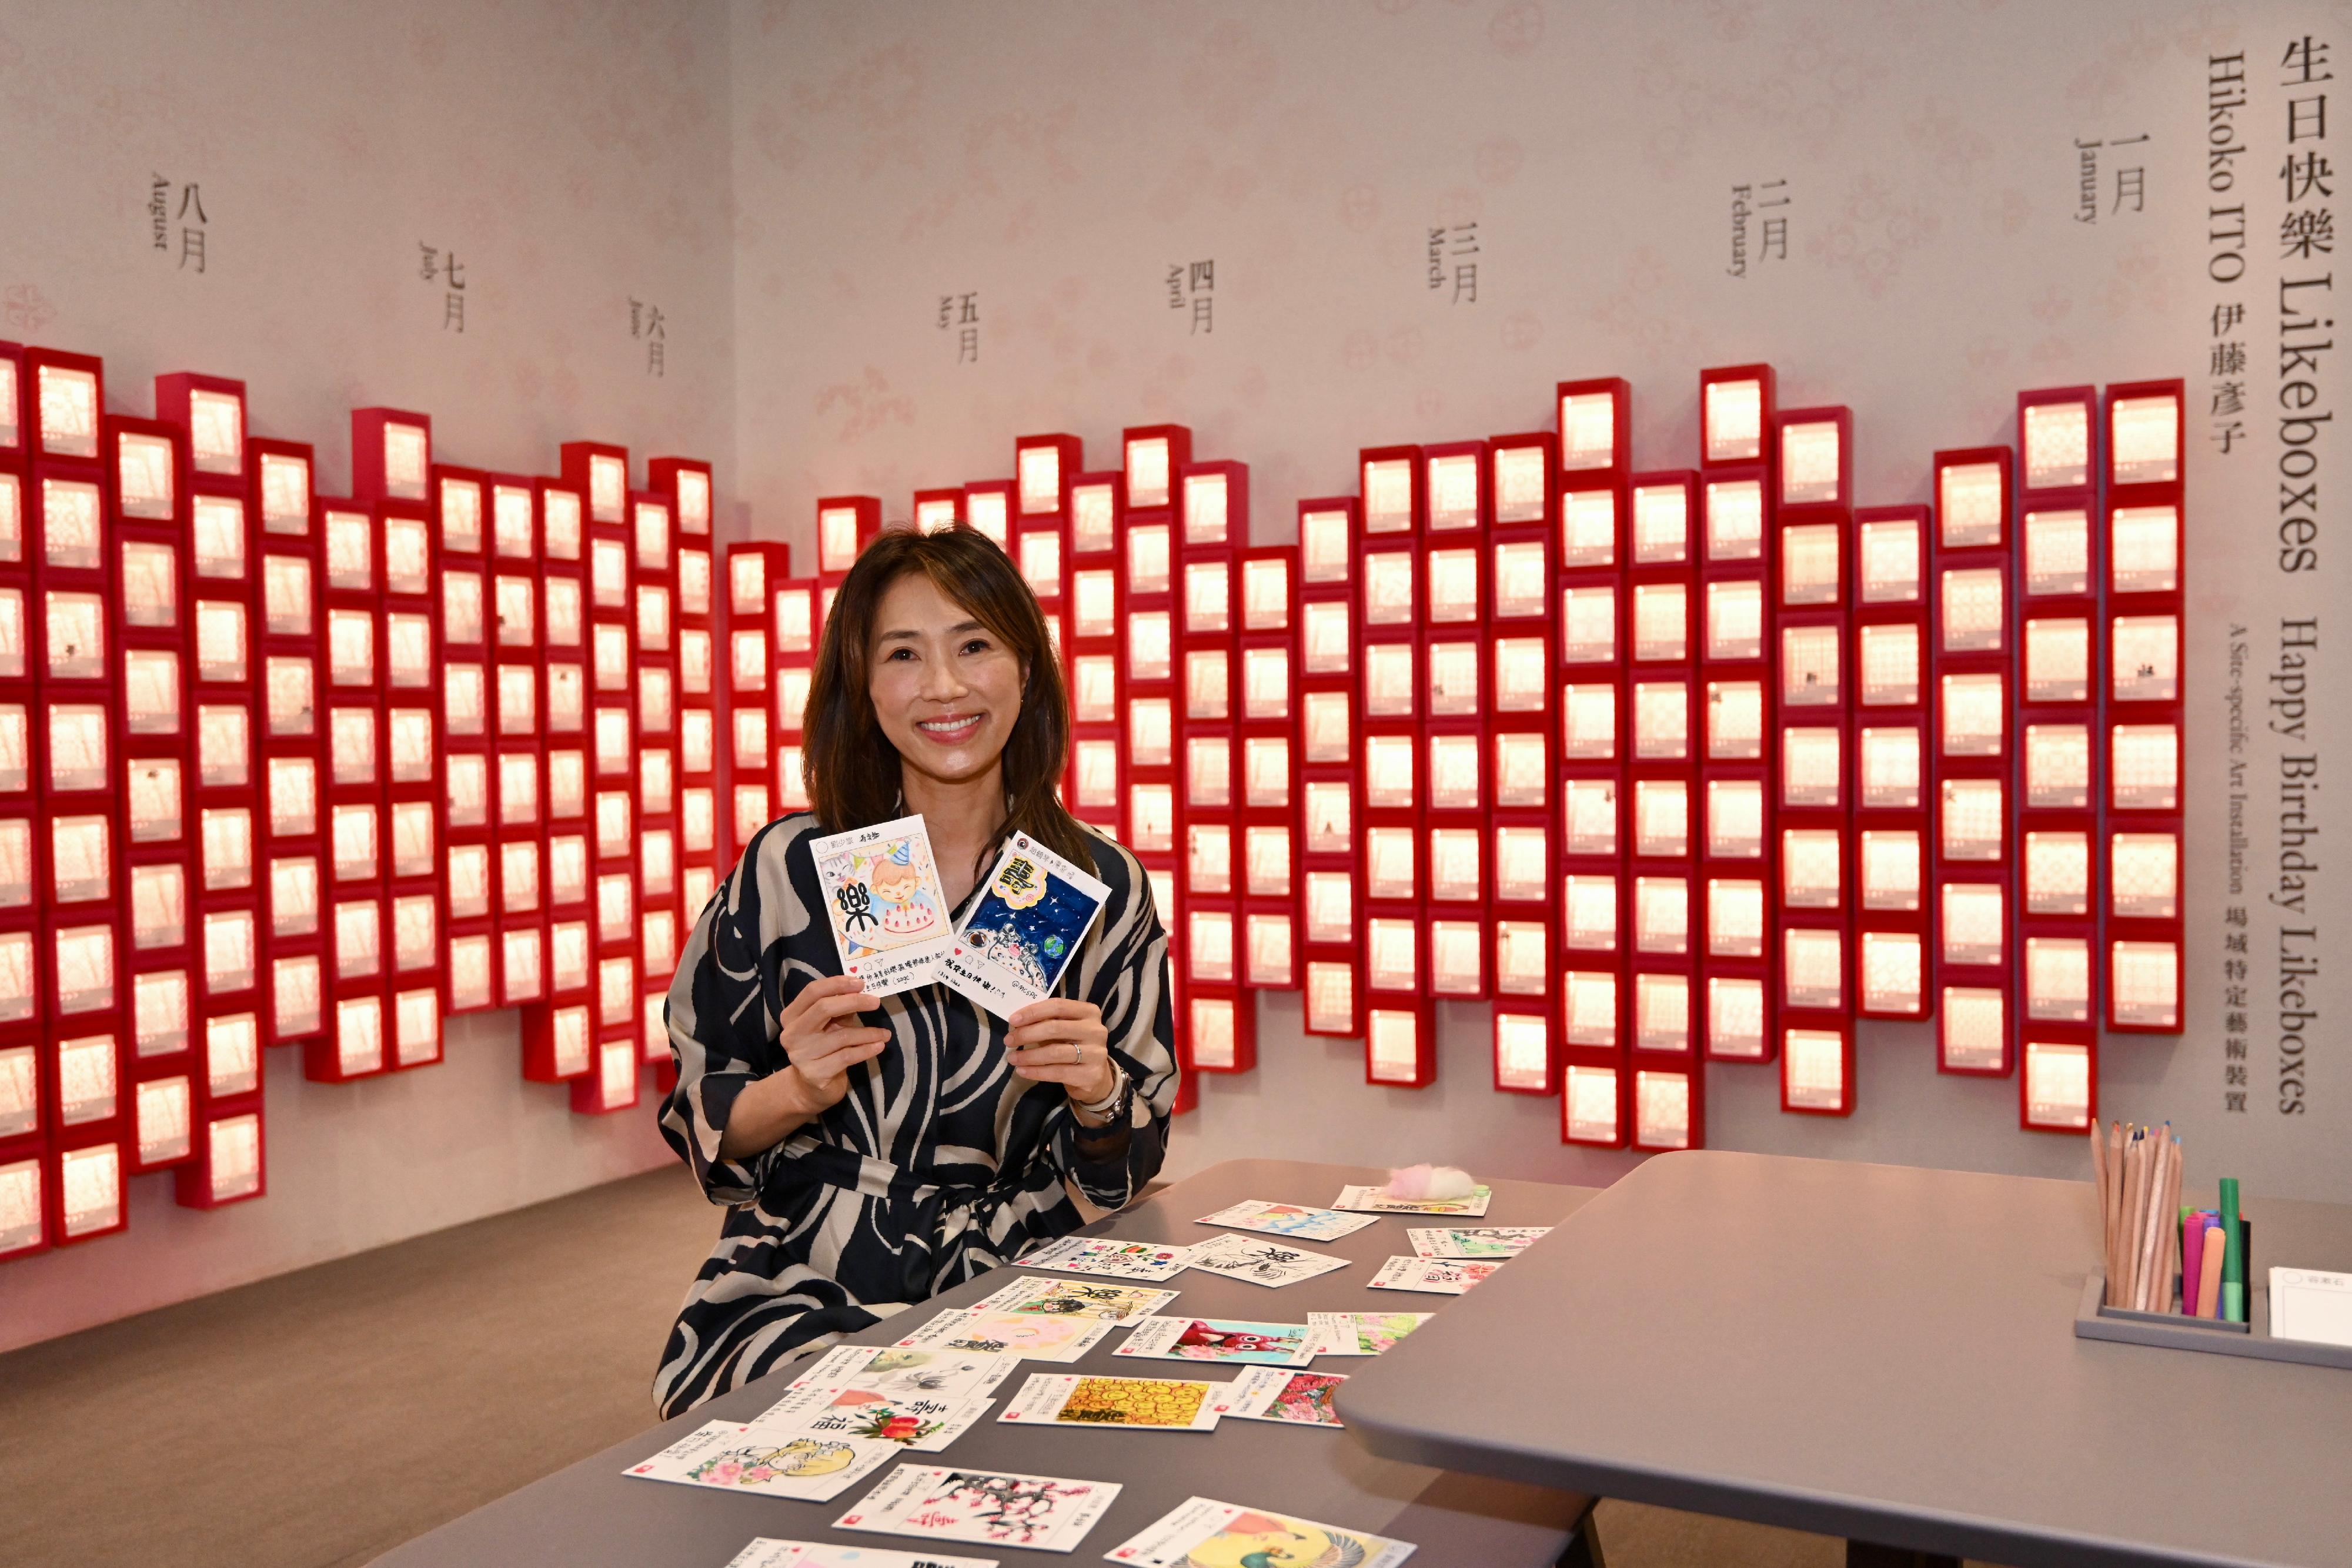 「雅慶──給至樂樓主人的生日賀言」展覽明日（七月十四日）起在香港藝術館舉行。圖示香港藝術家伊藤彥子及她為展覽創作的《生日快樂 Likeboxes》藝術裝置。



